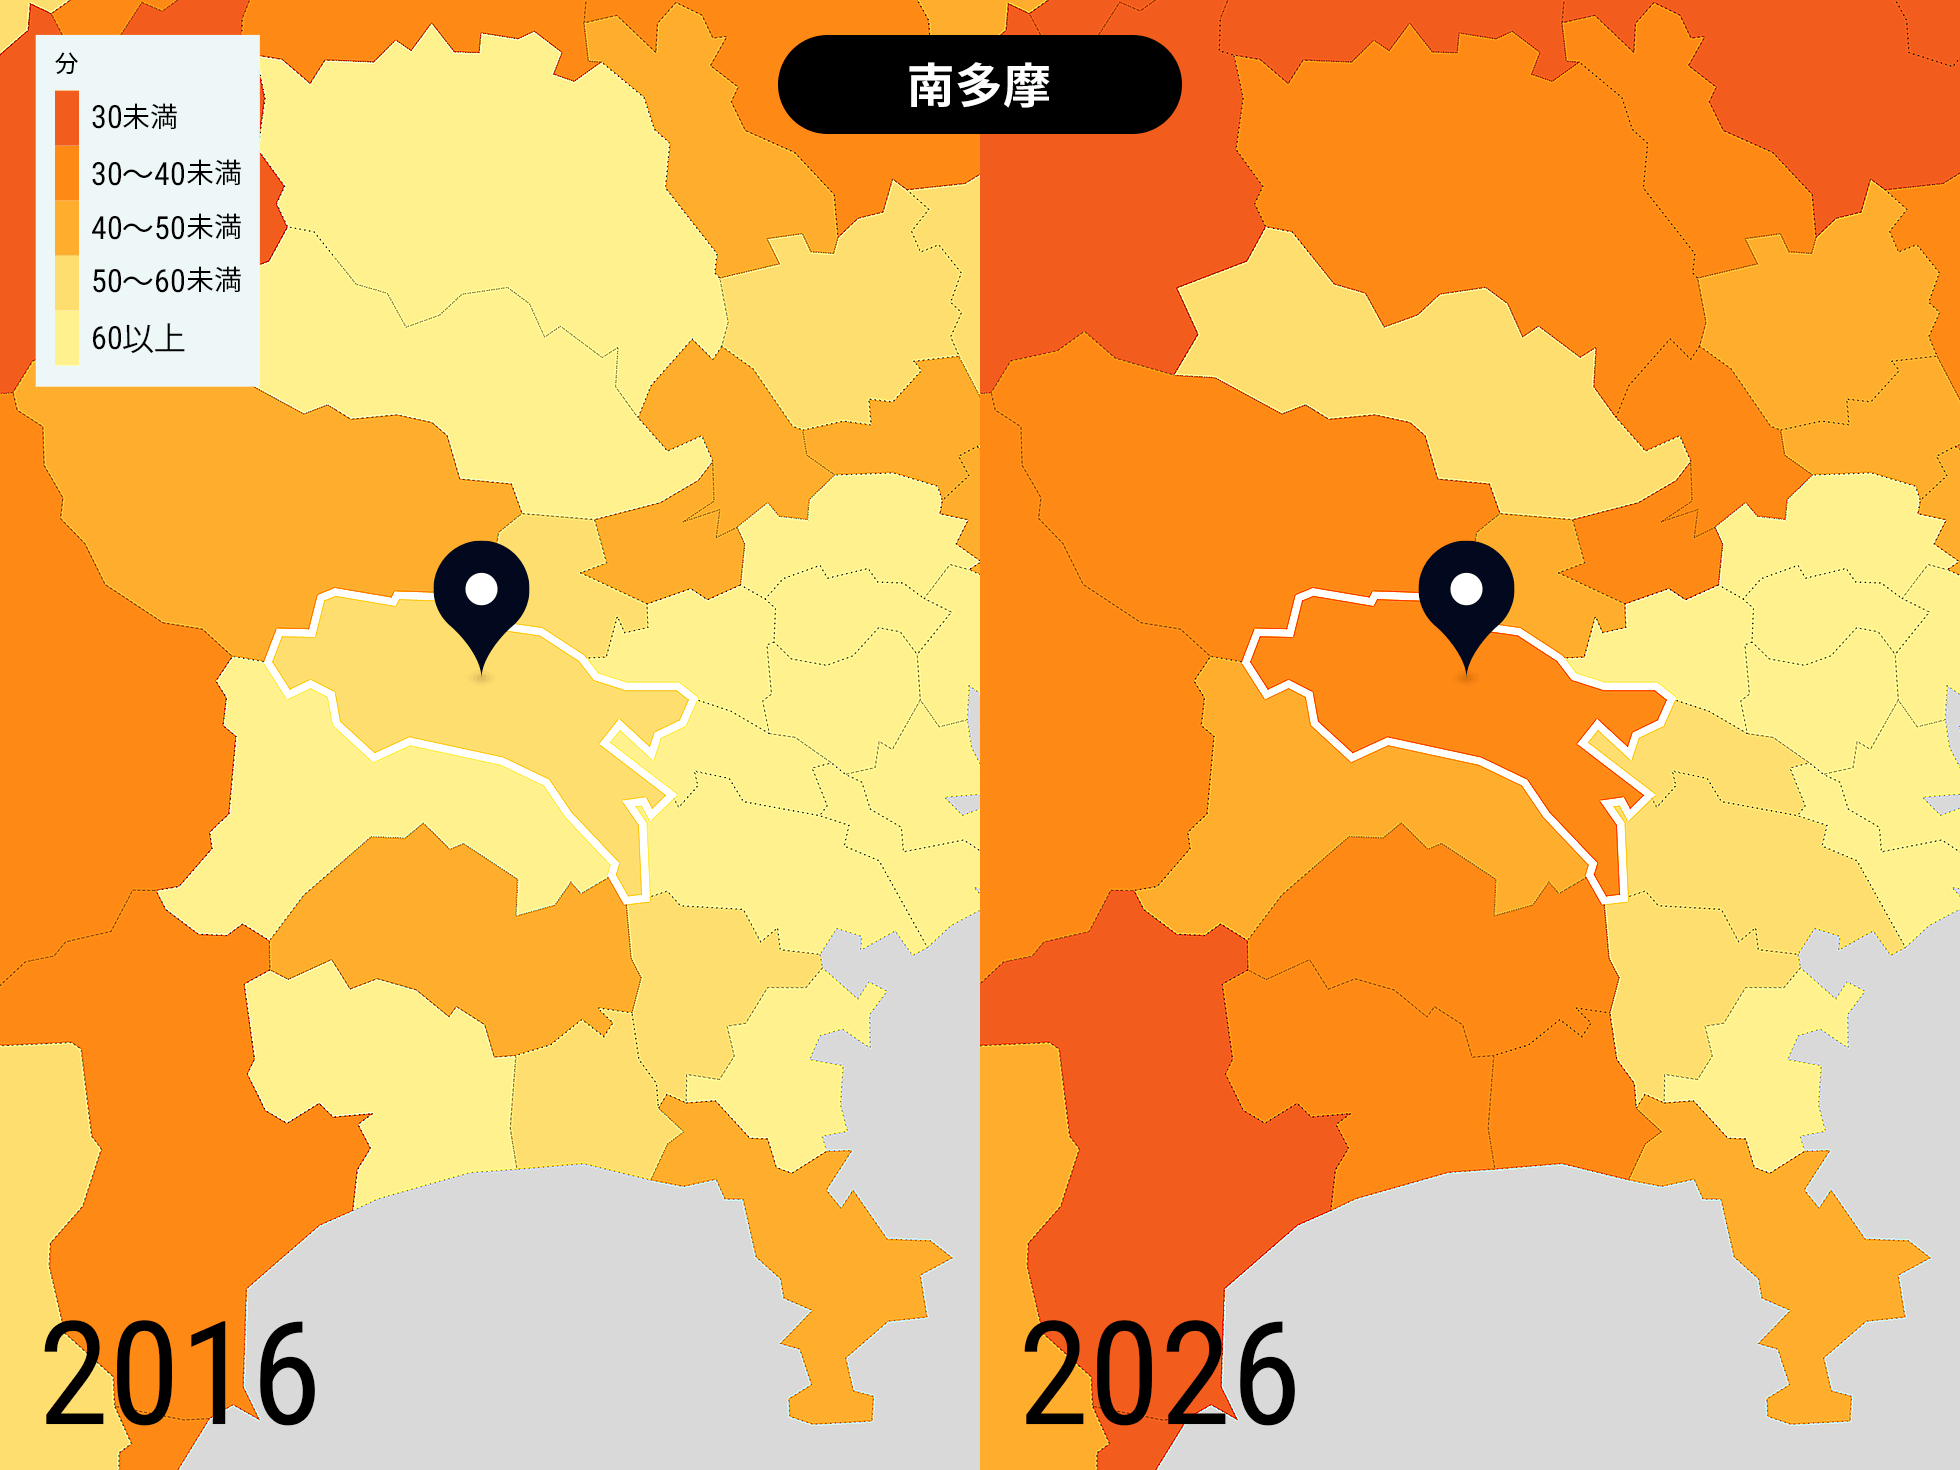 東京 南多摩の2016年と2026年の比較